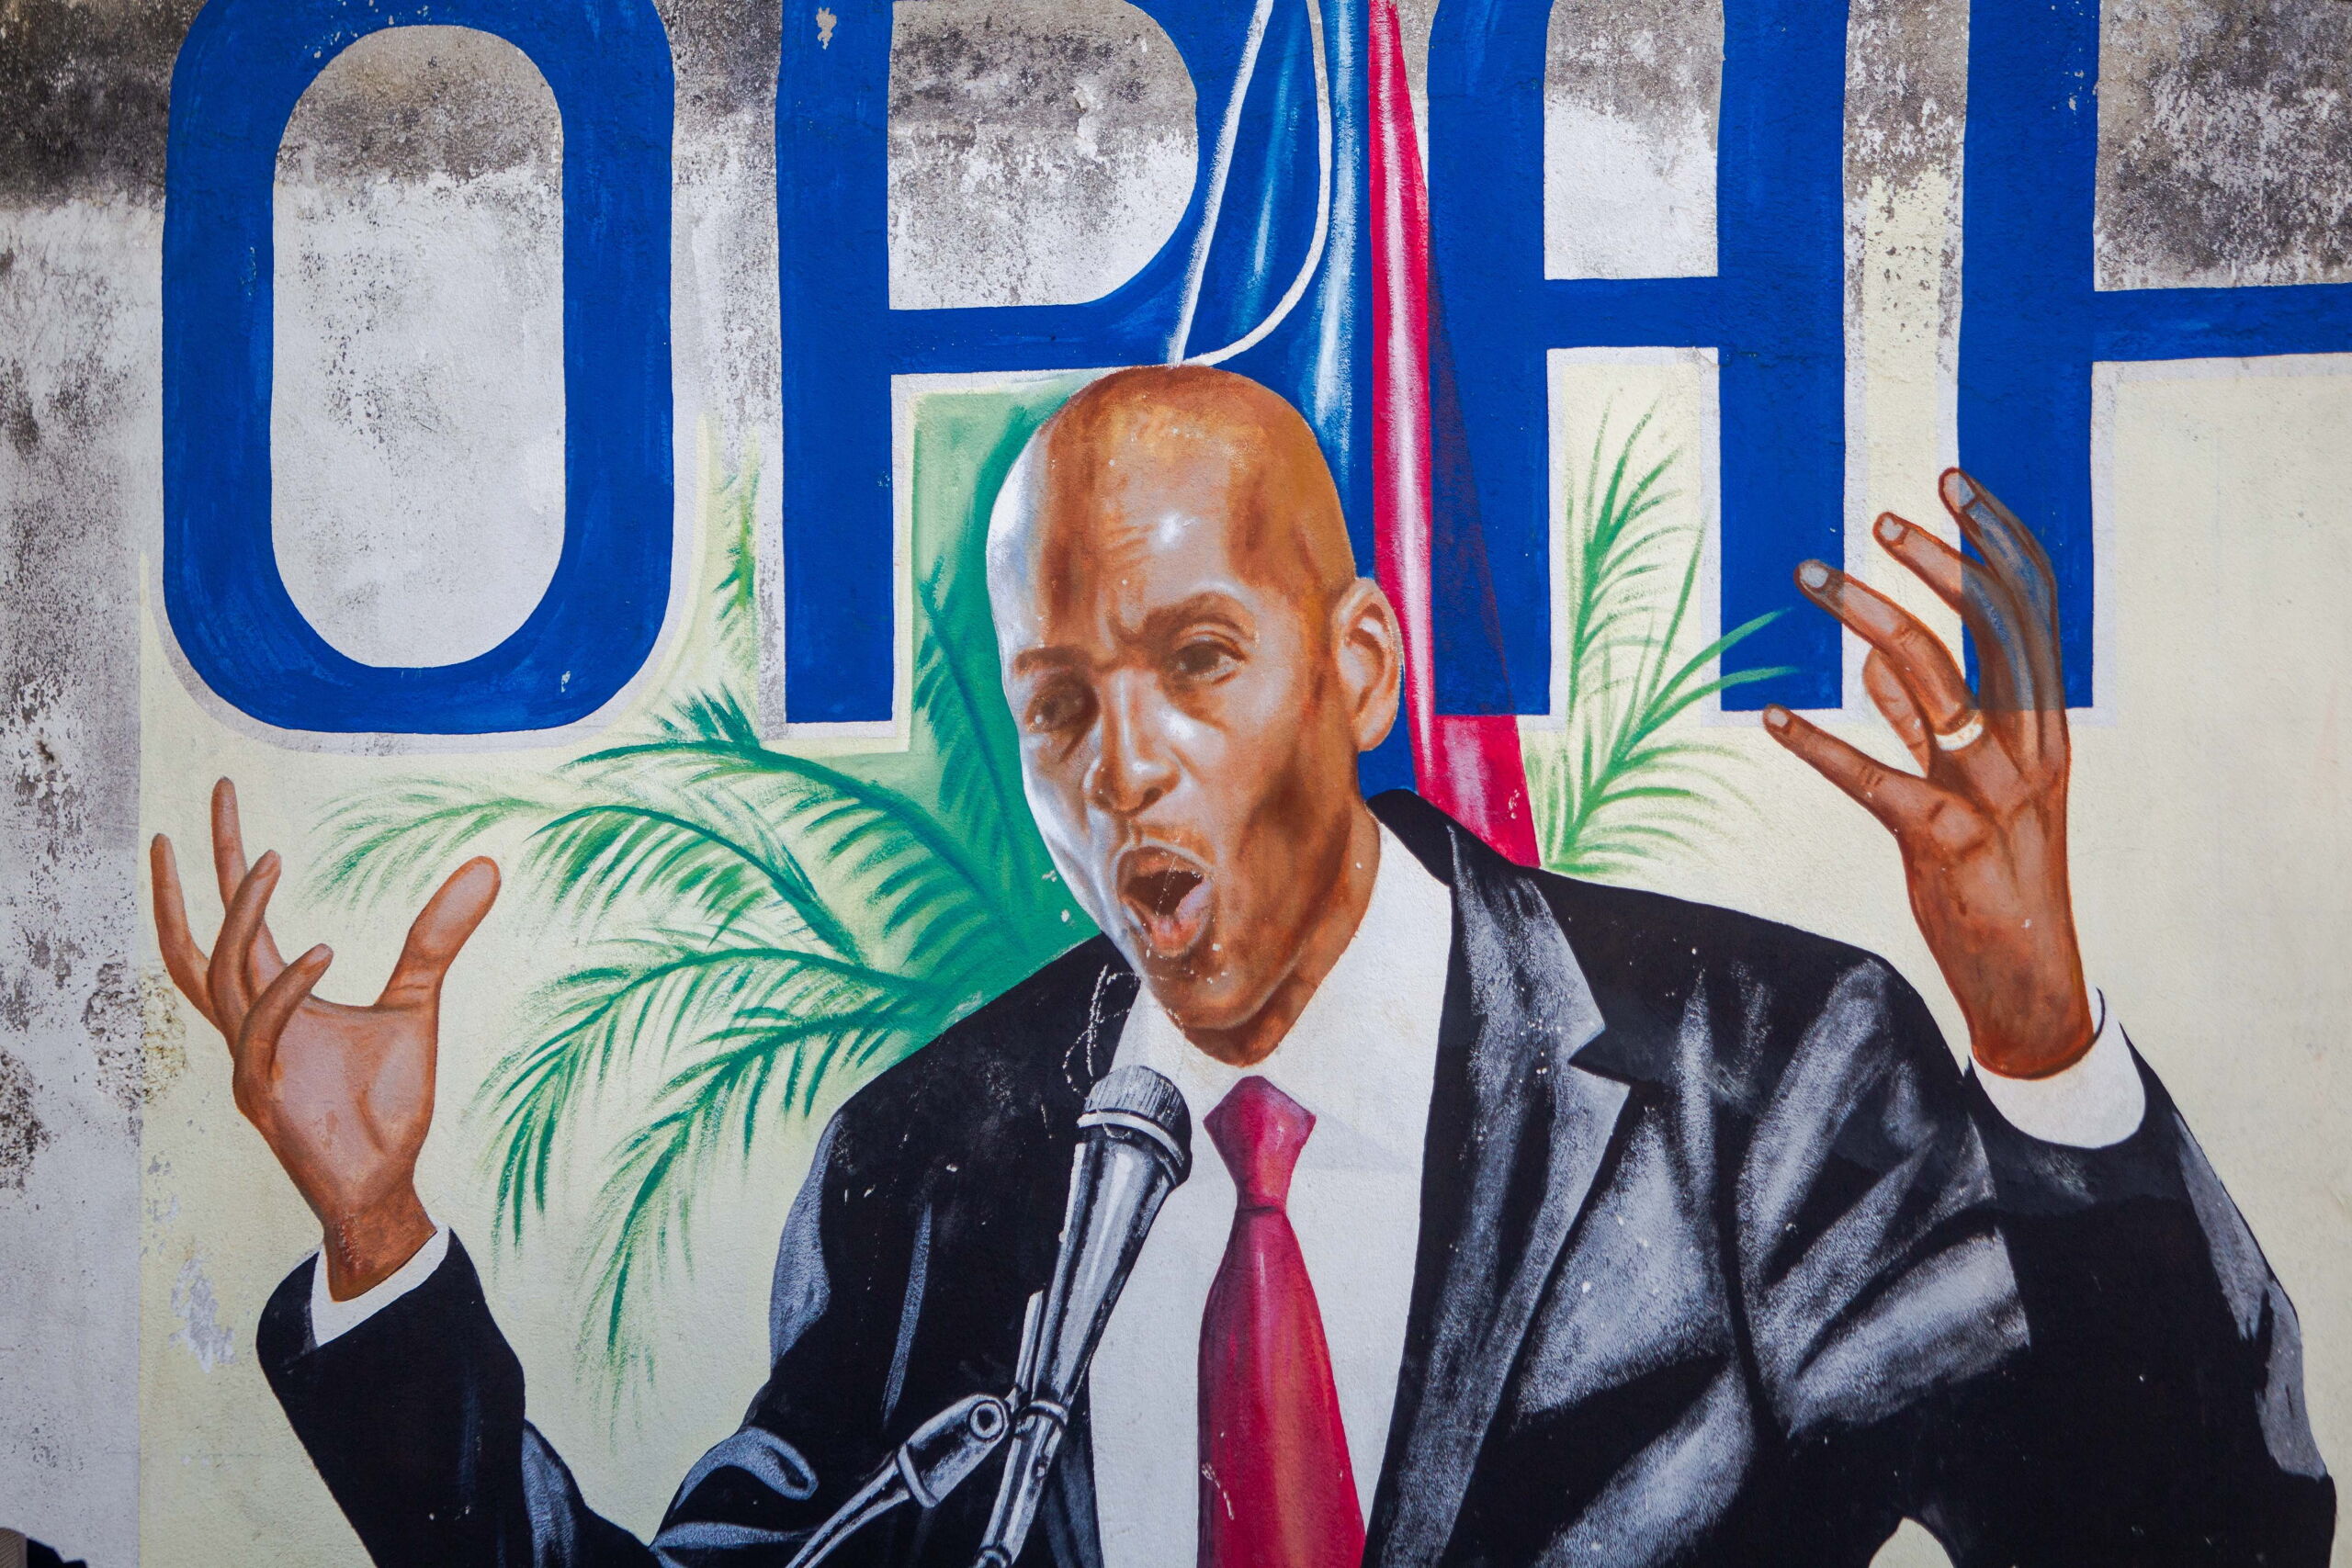 Muurschildering van de vermoorde resident Jovenel Moise in Port-au-Prince, Haiti